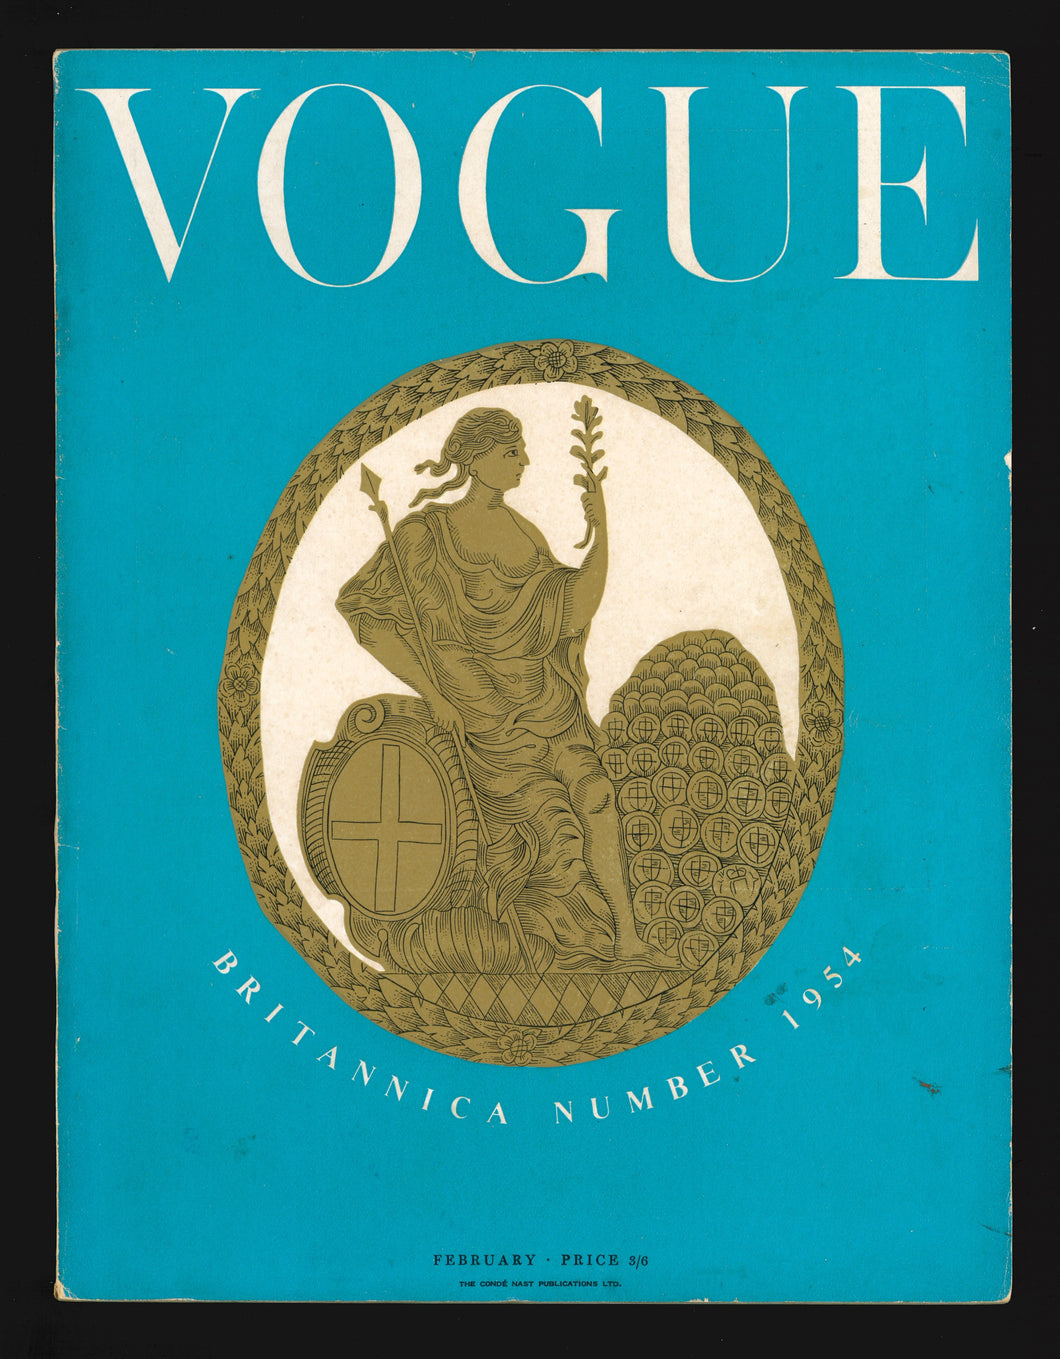 Vogue UK Feb 1954 - Britannica Issue